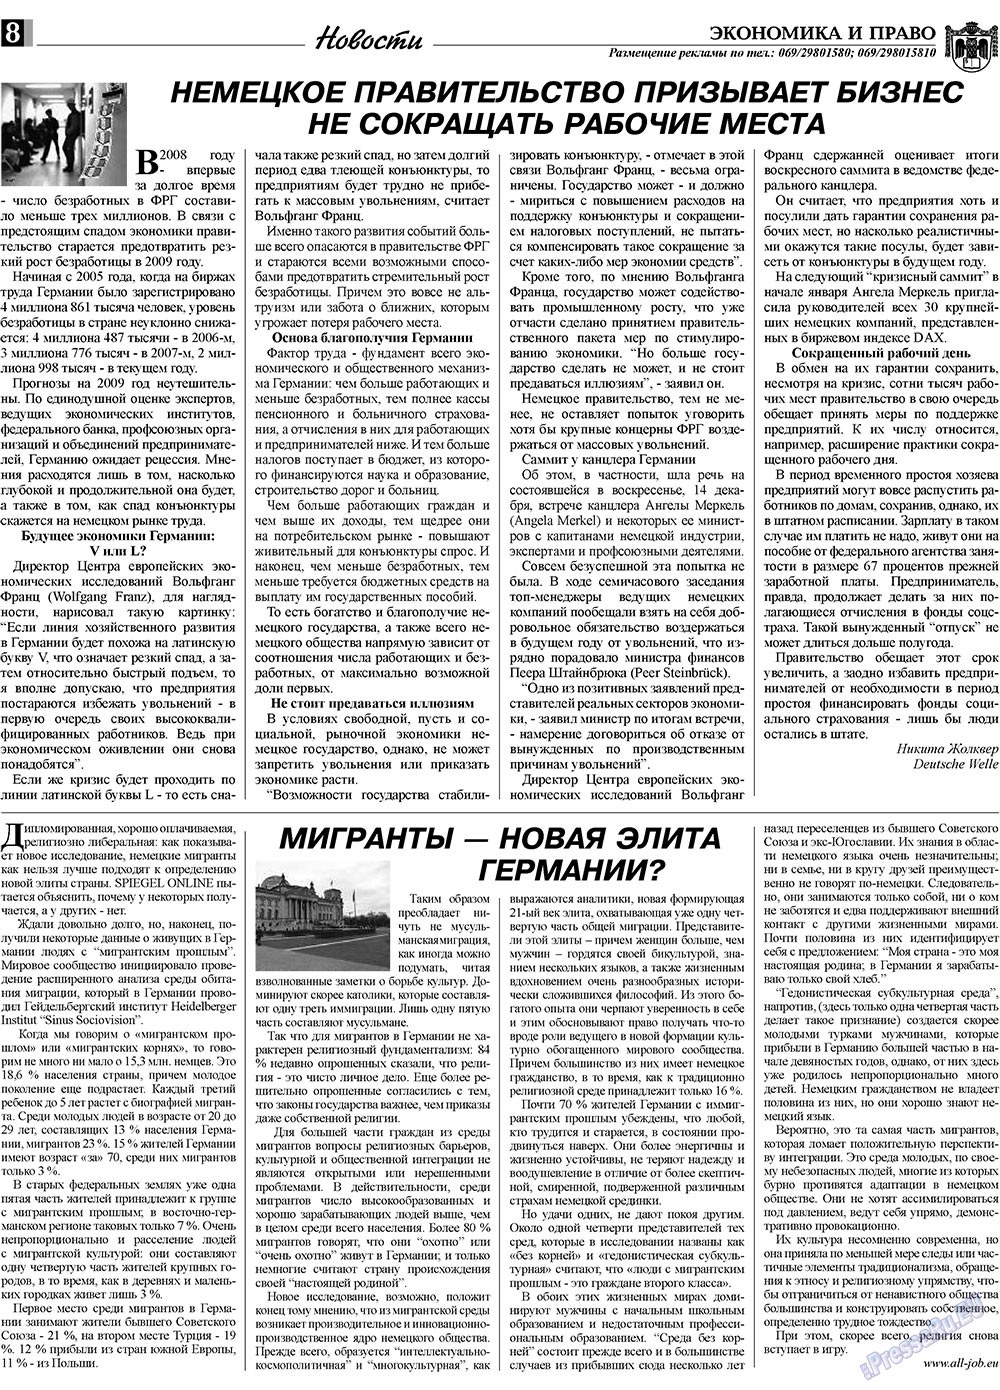 Экономика и право, газета. 2009 №1 стр.8